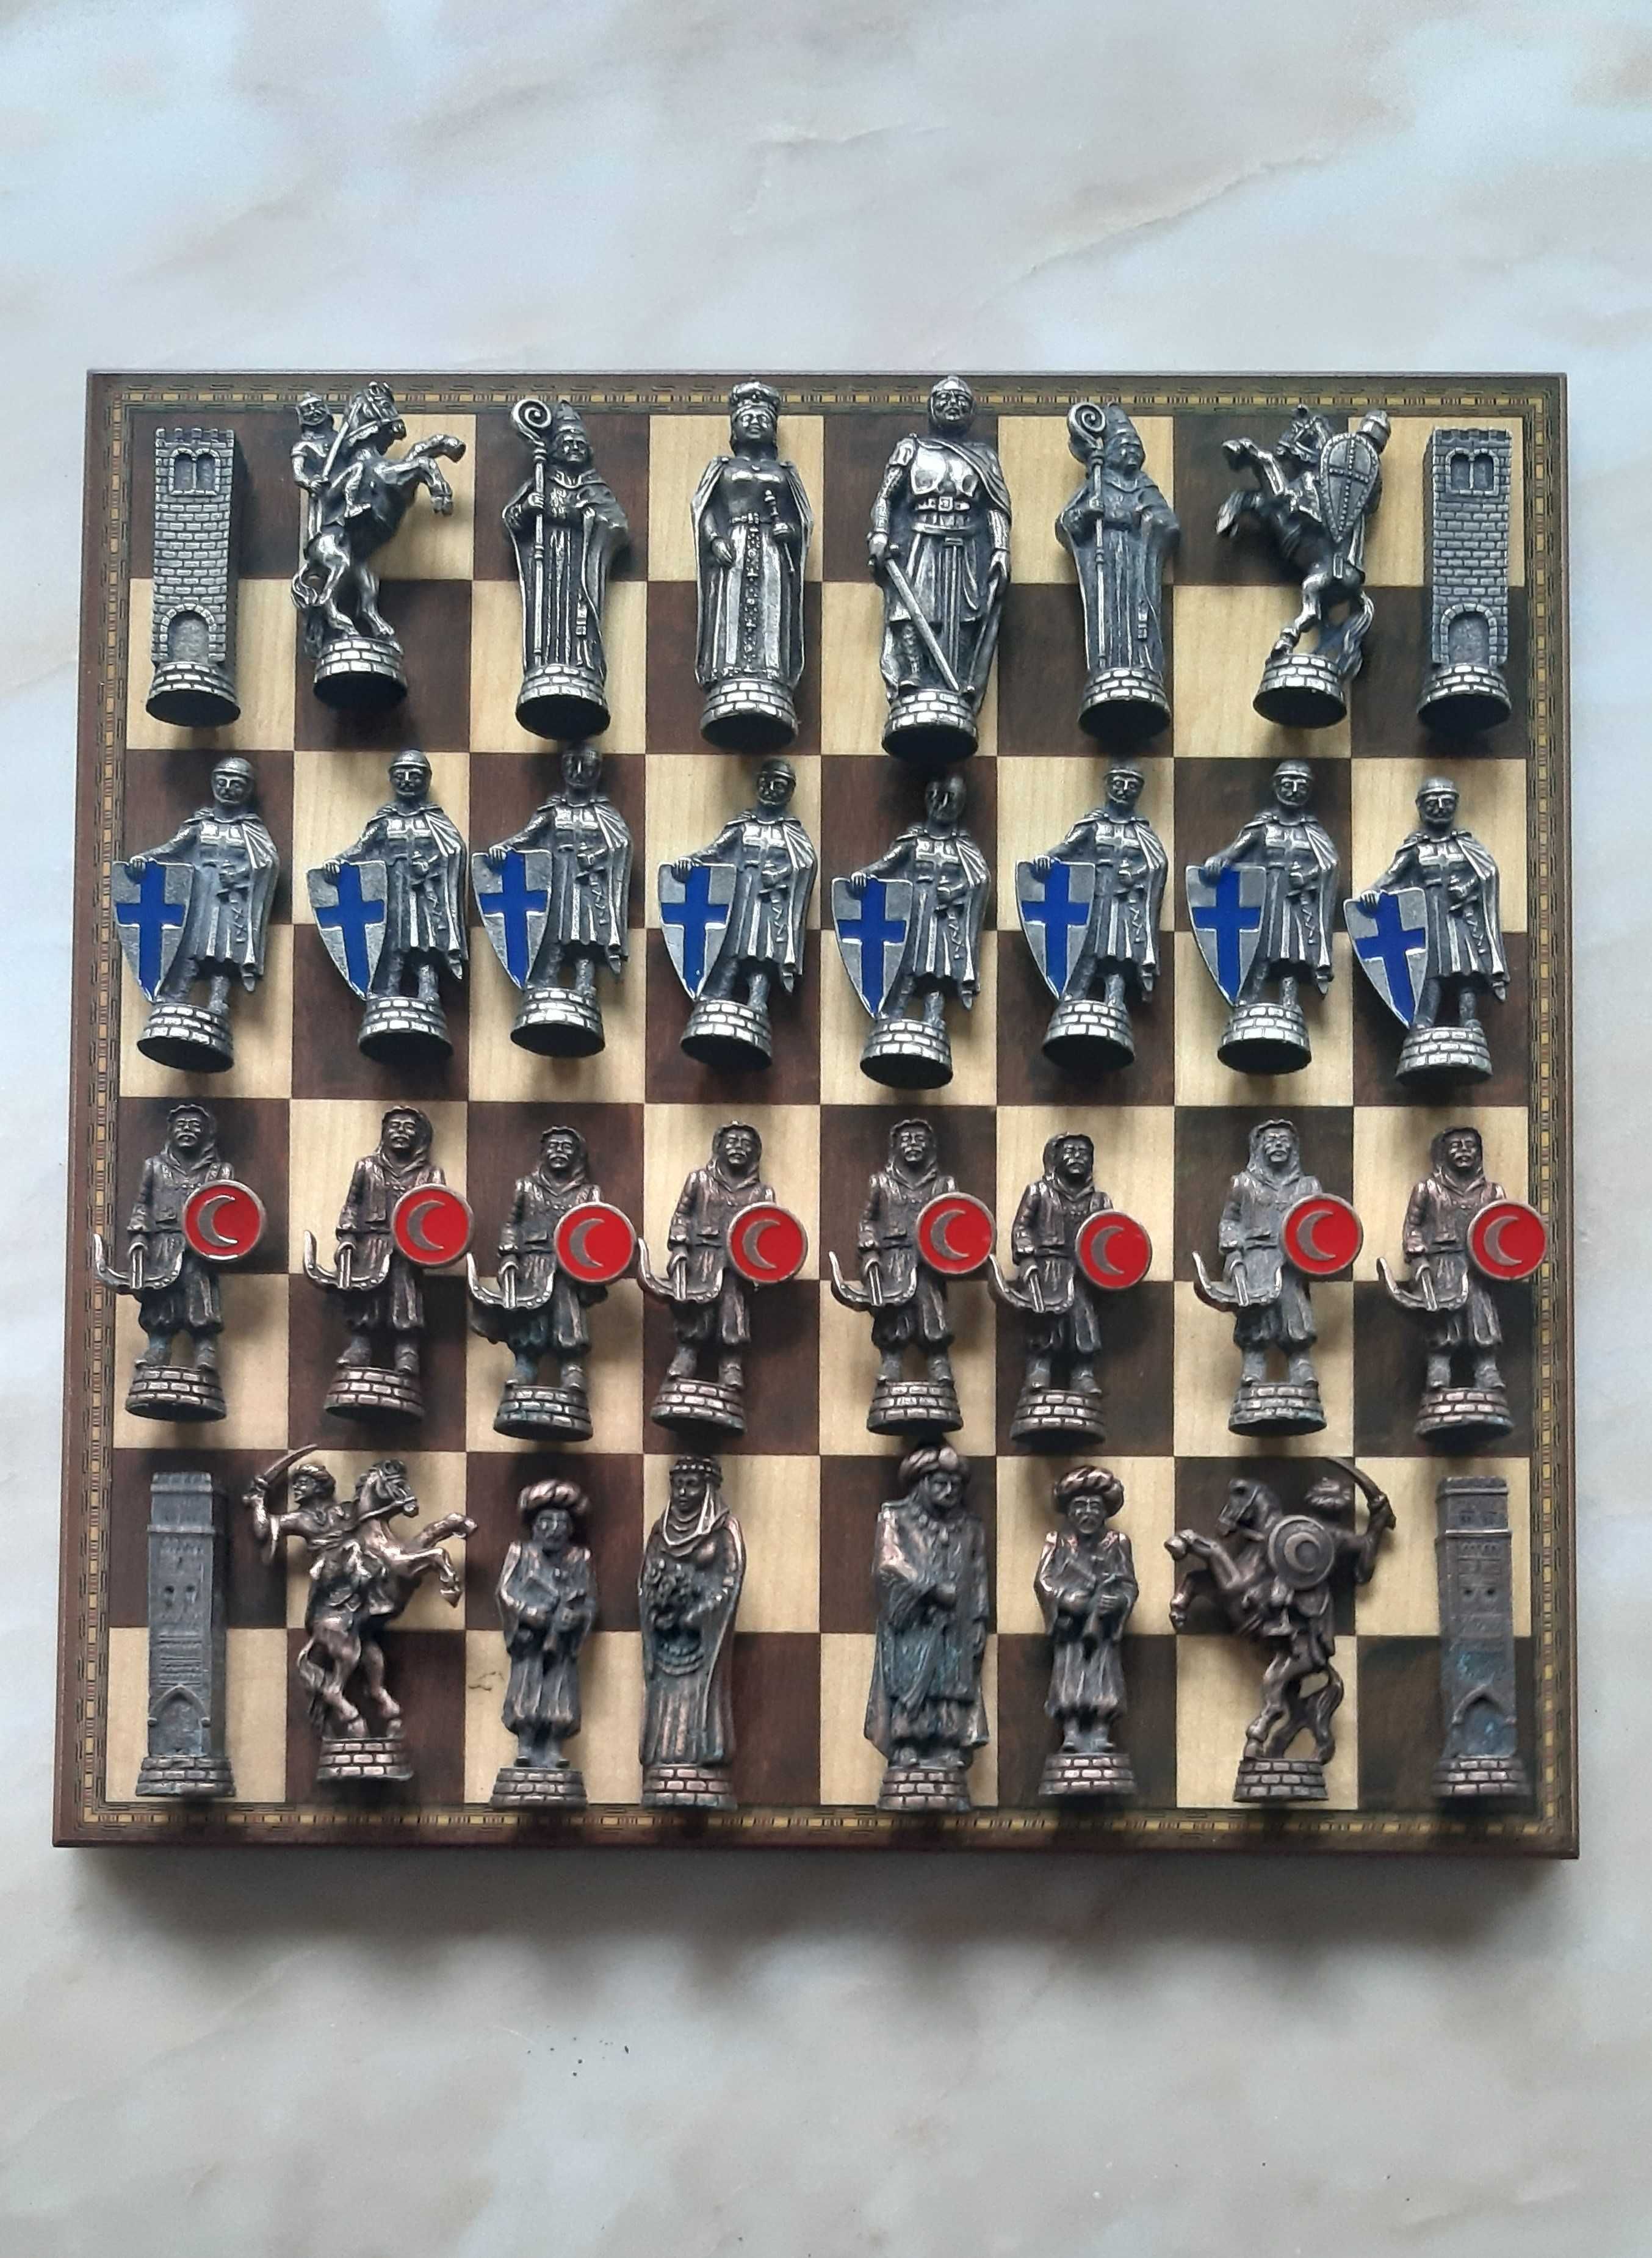 Jogo de xadrez temático medieval - Vintage